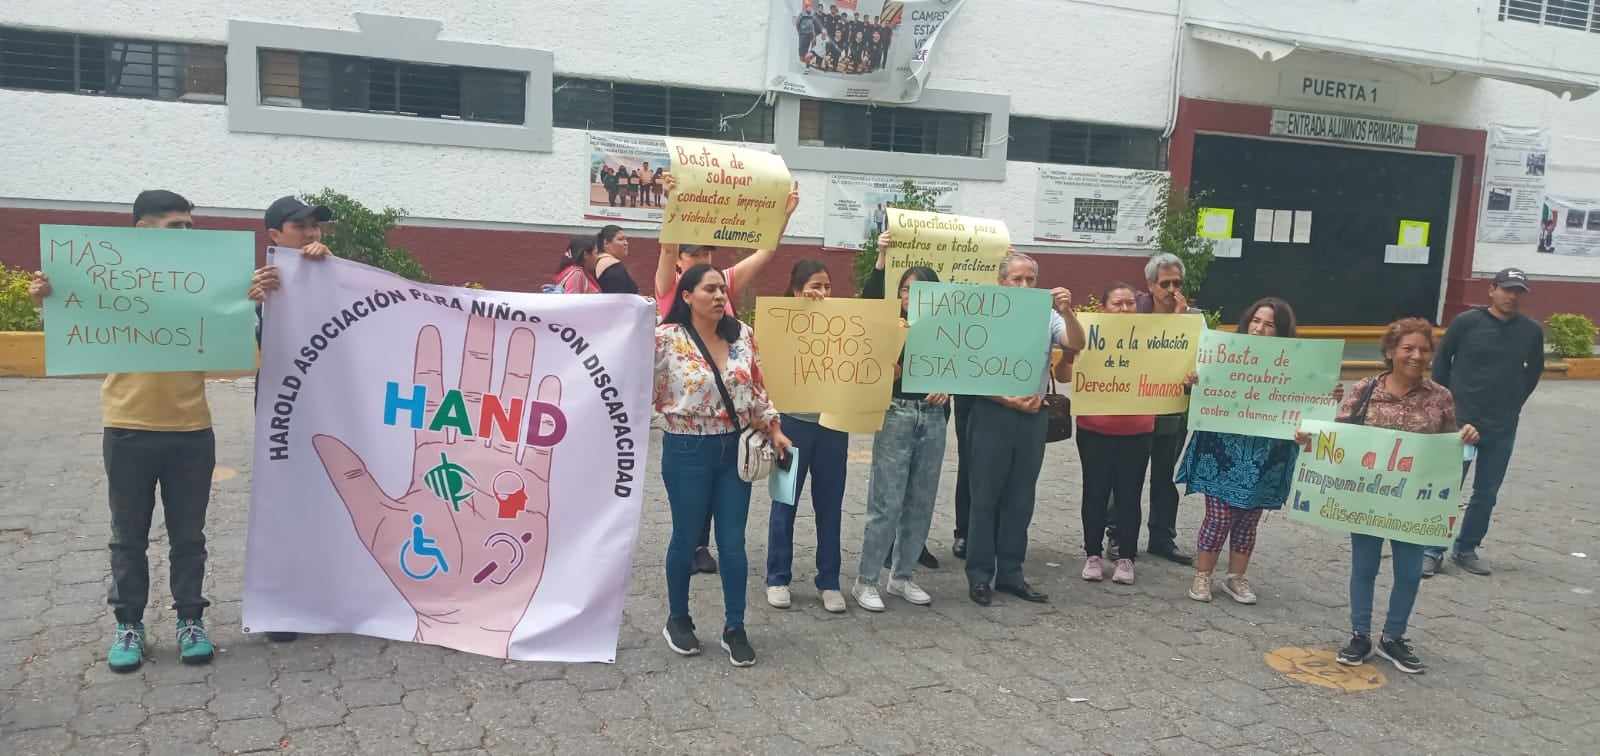 Denuncian a docente y director por bullear a estudiante de la UEPOM Tehuacán